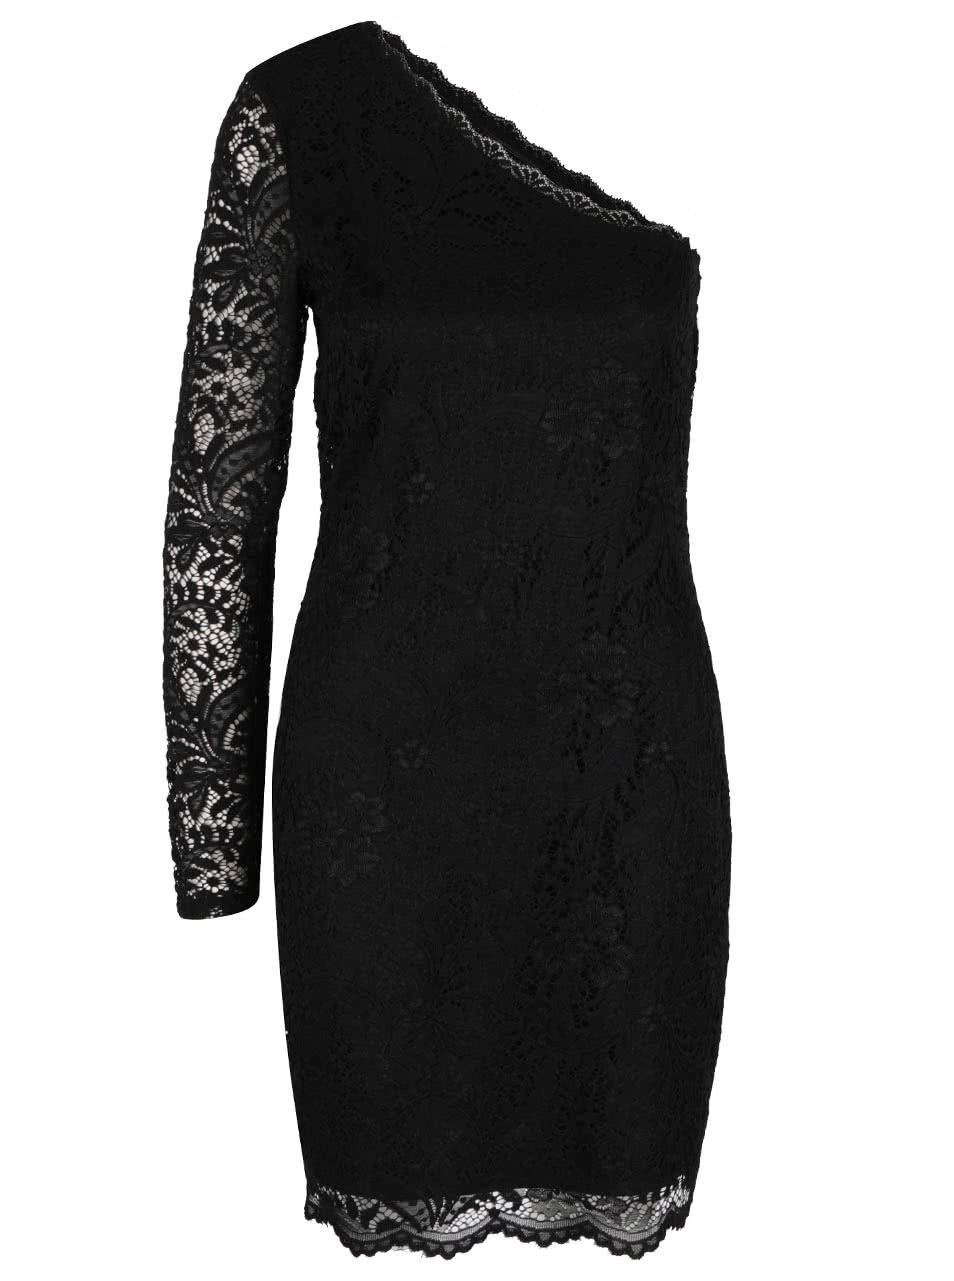 Černé krajkové šaty s odhaleným ramenem Vero Moda Celeb